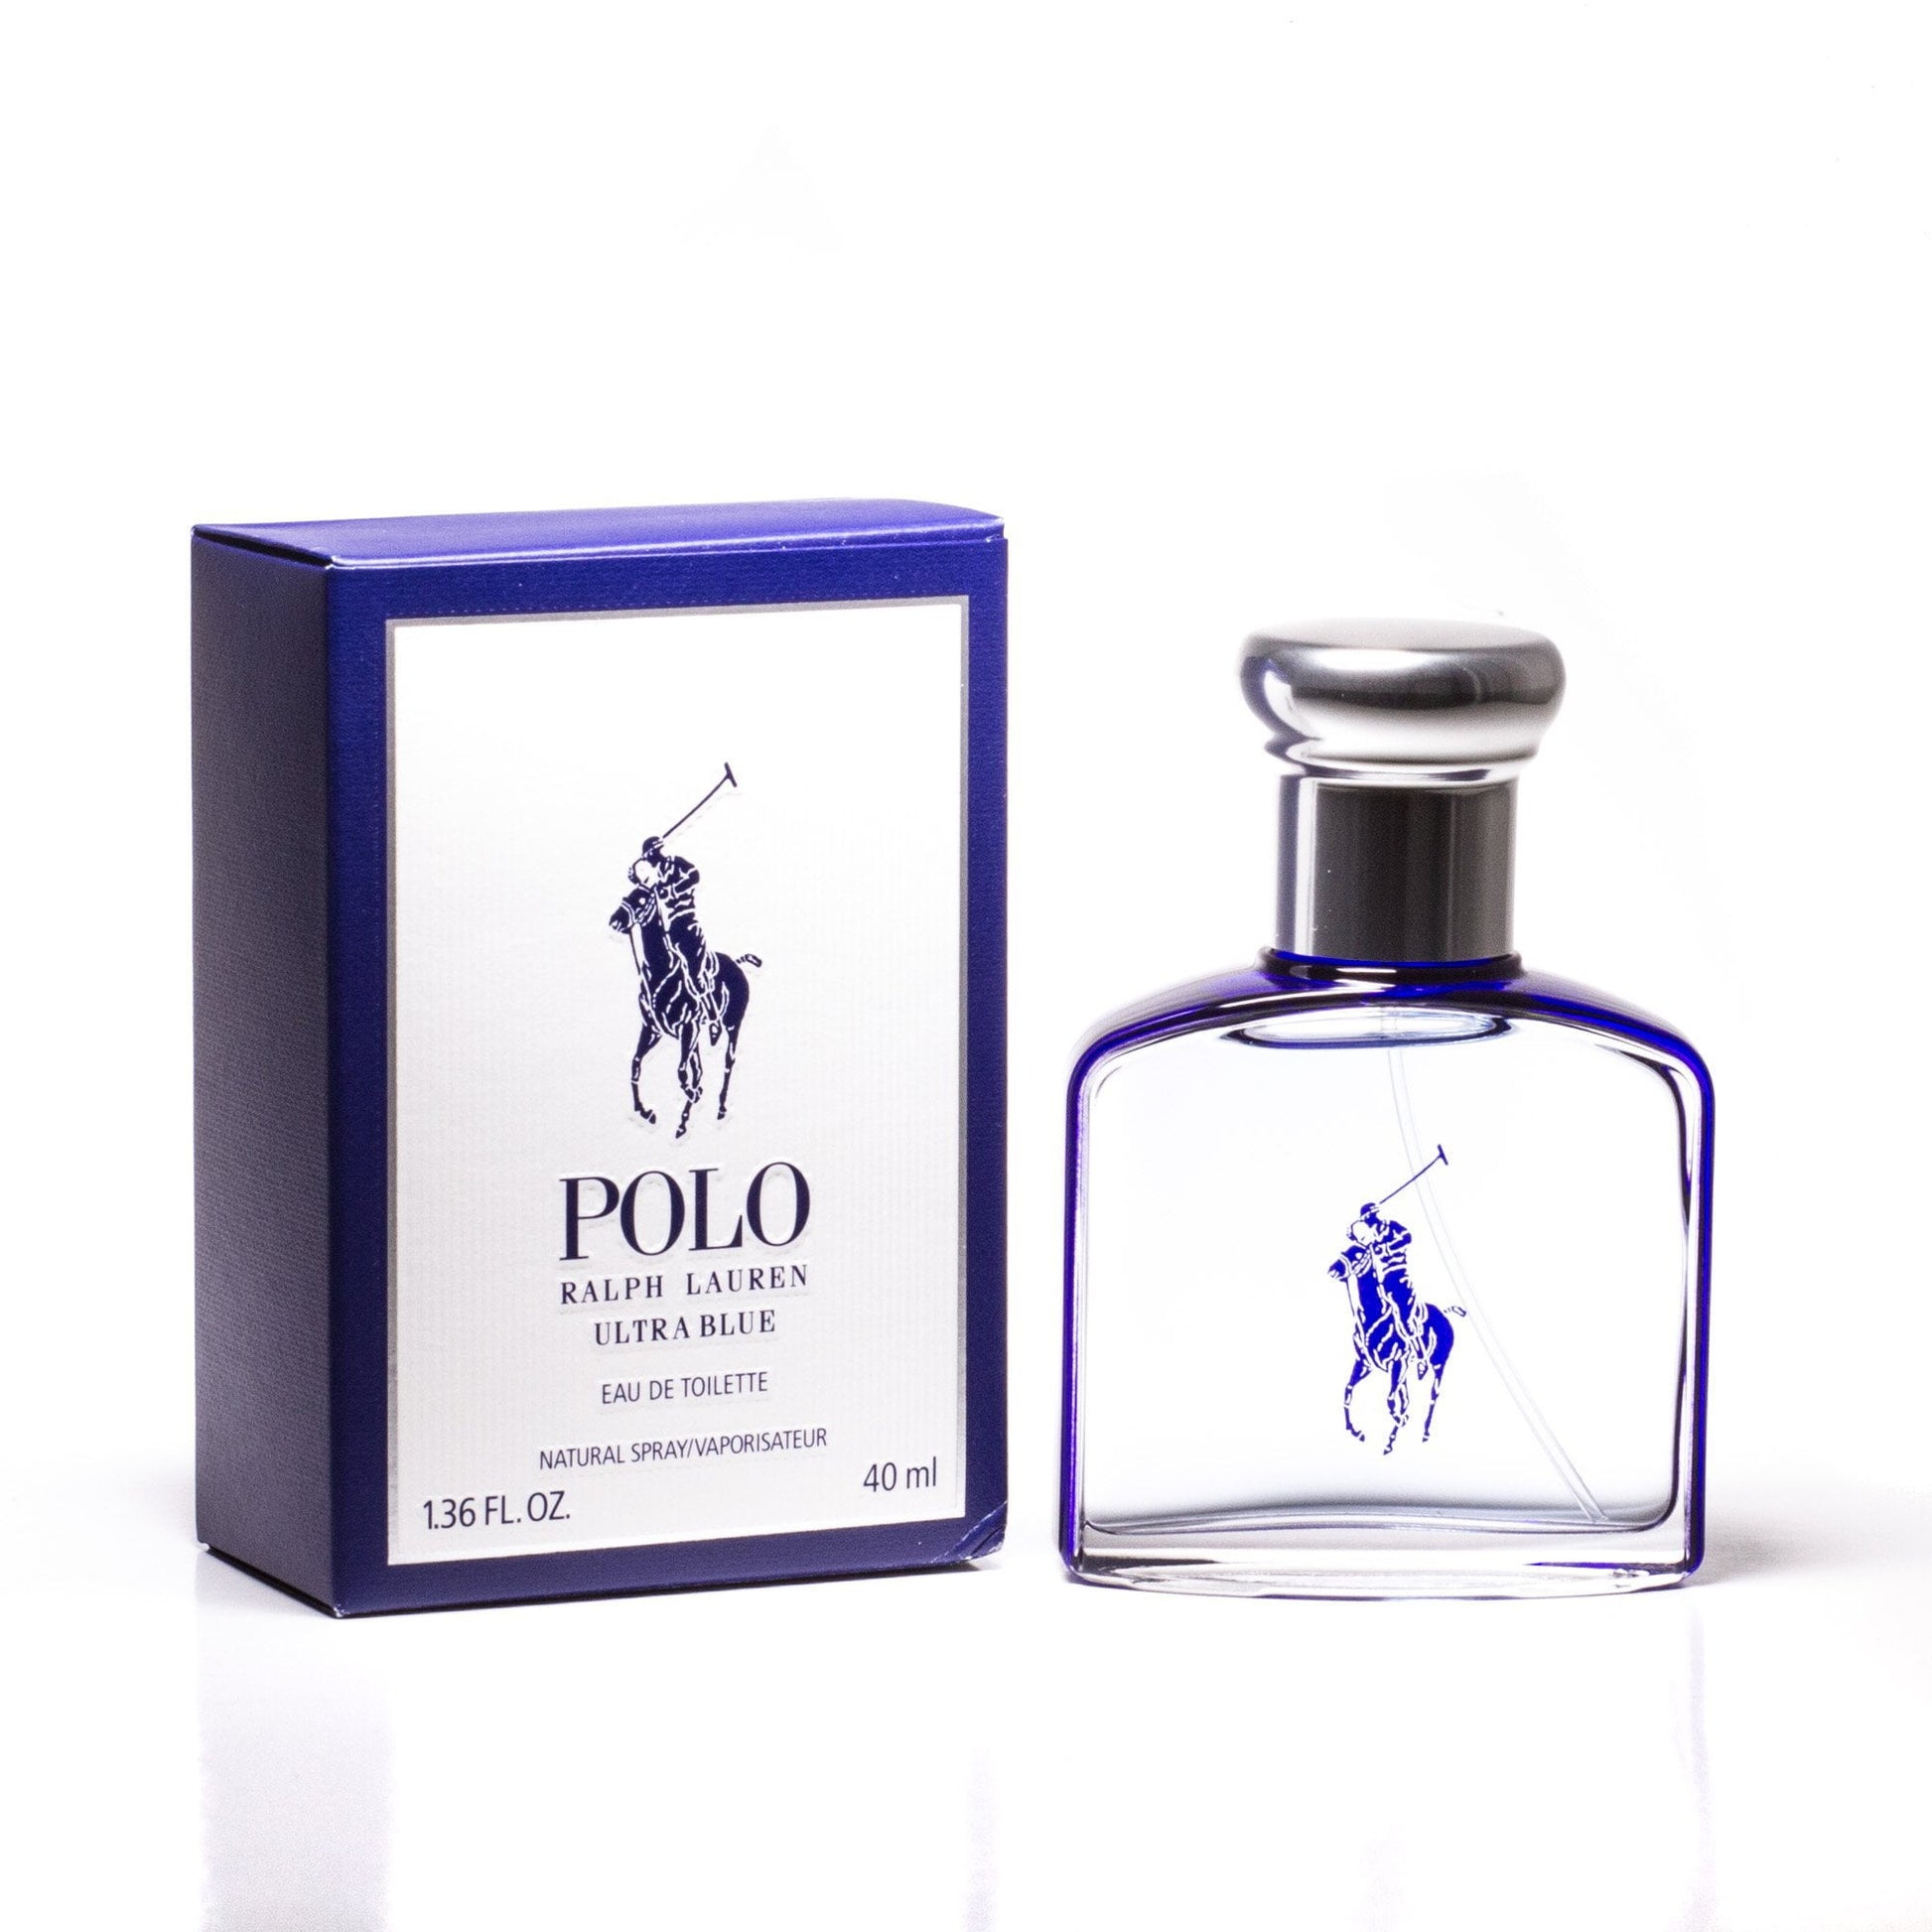 Polo Ultra Blue Eau de Toilette Spray for Men by Ralph Lauren, Product image 1